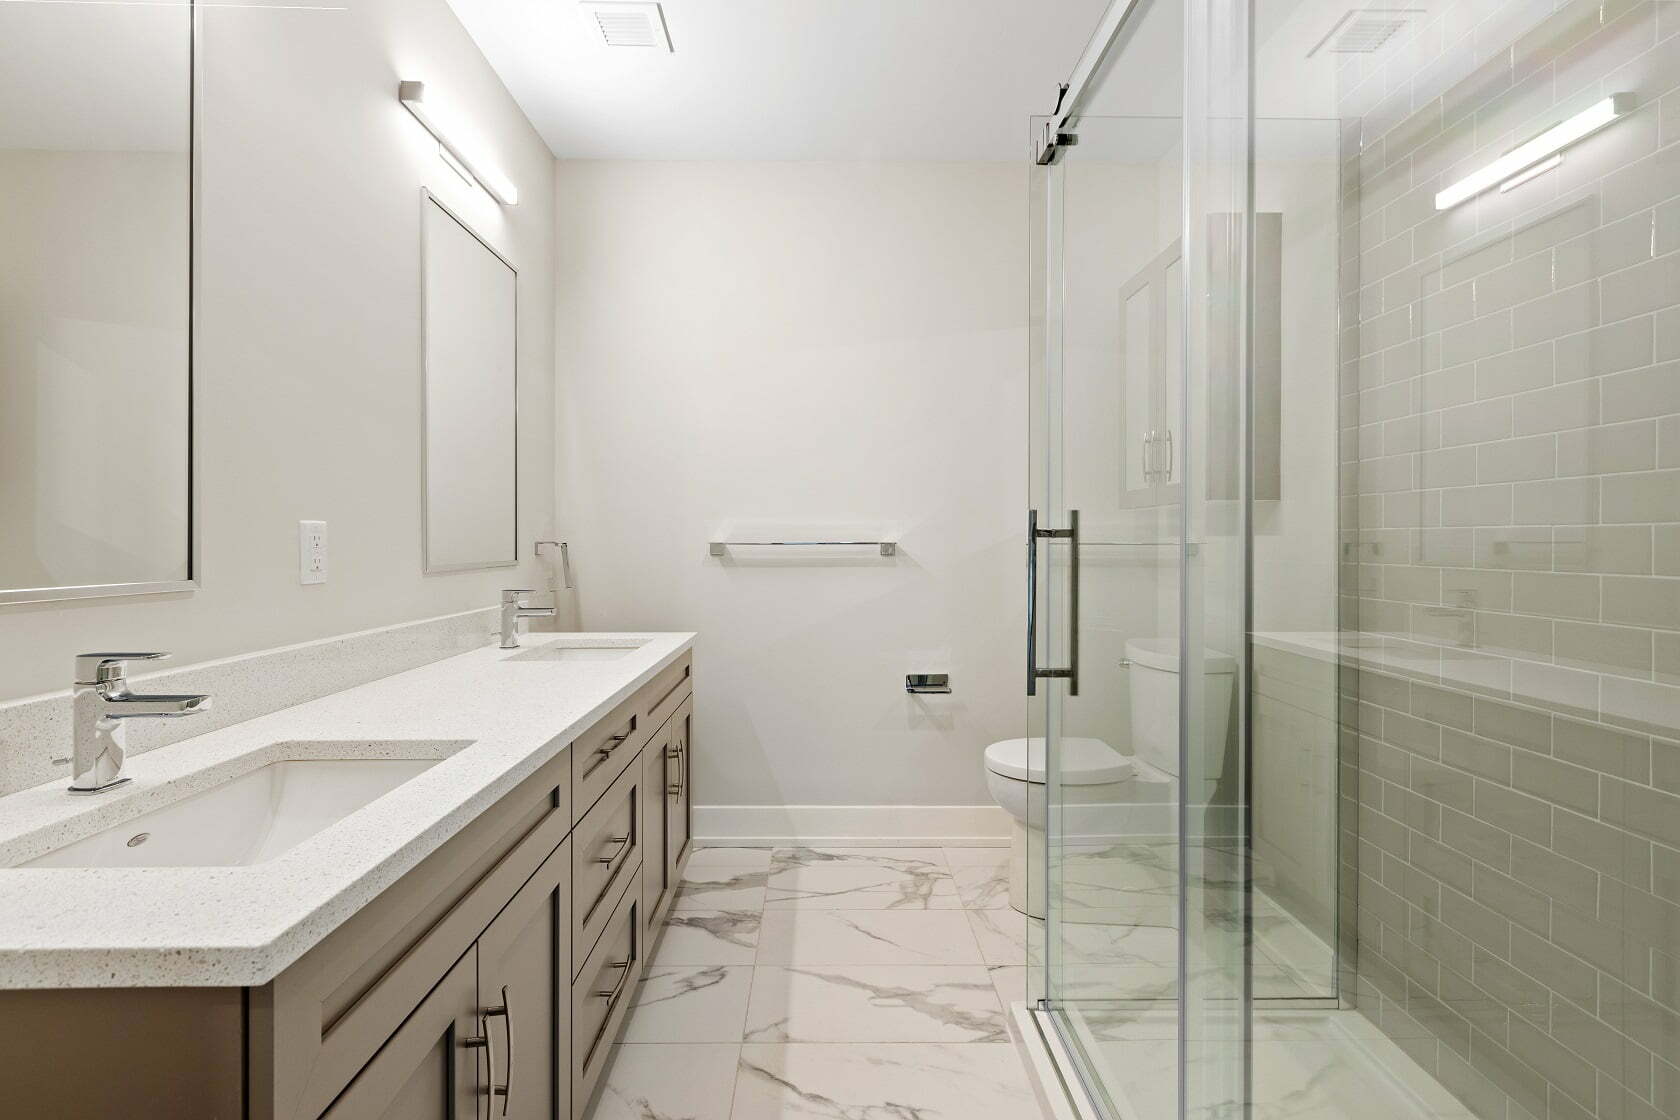 Bathroom Replace Remodel Shower Conversion Colorado Springs